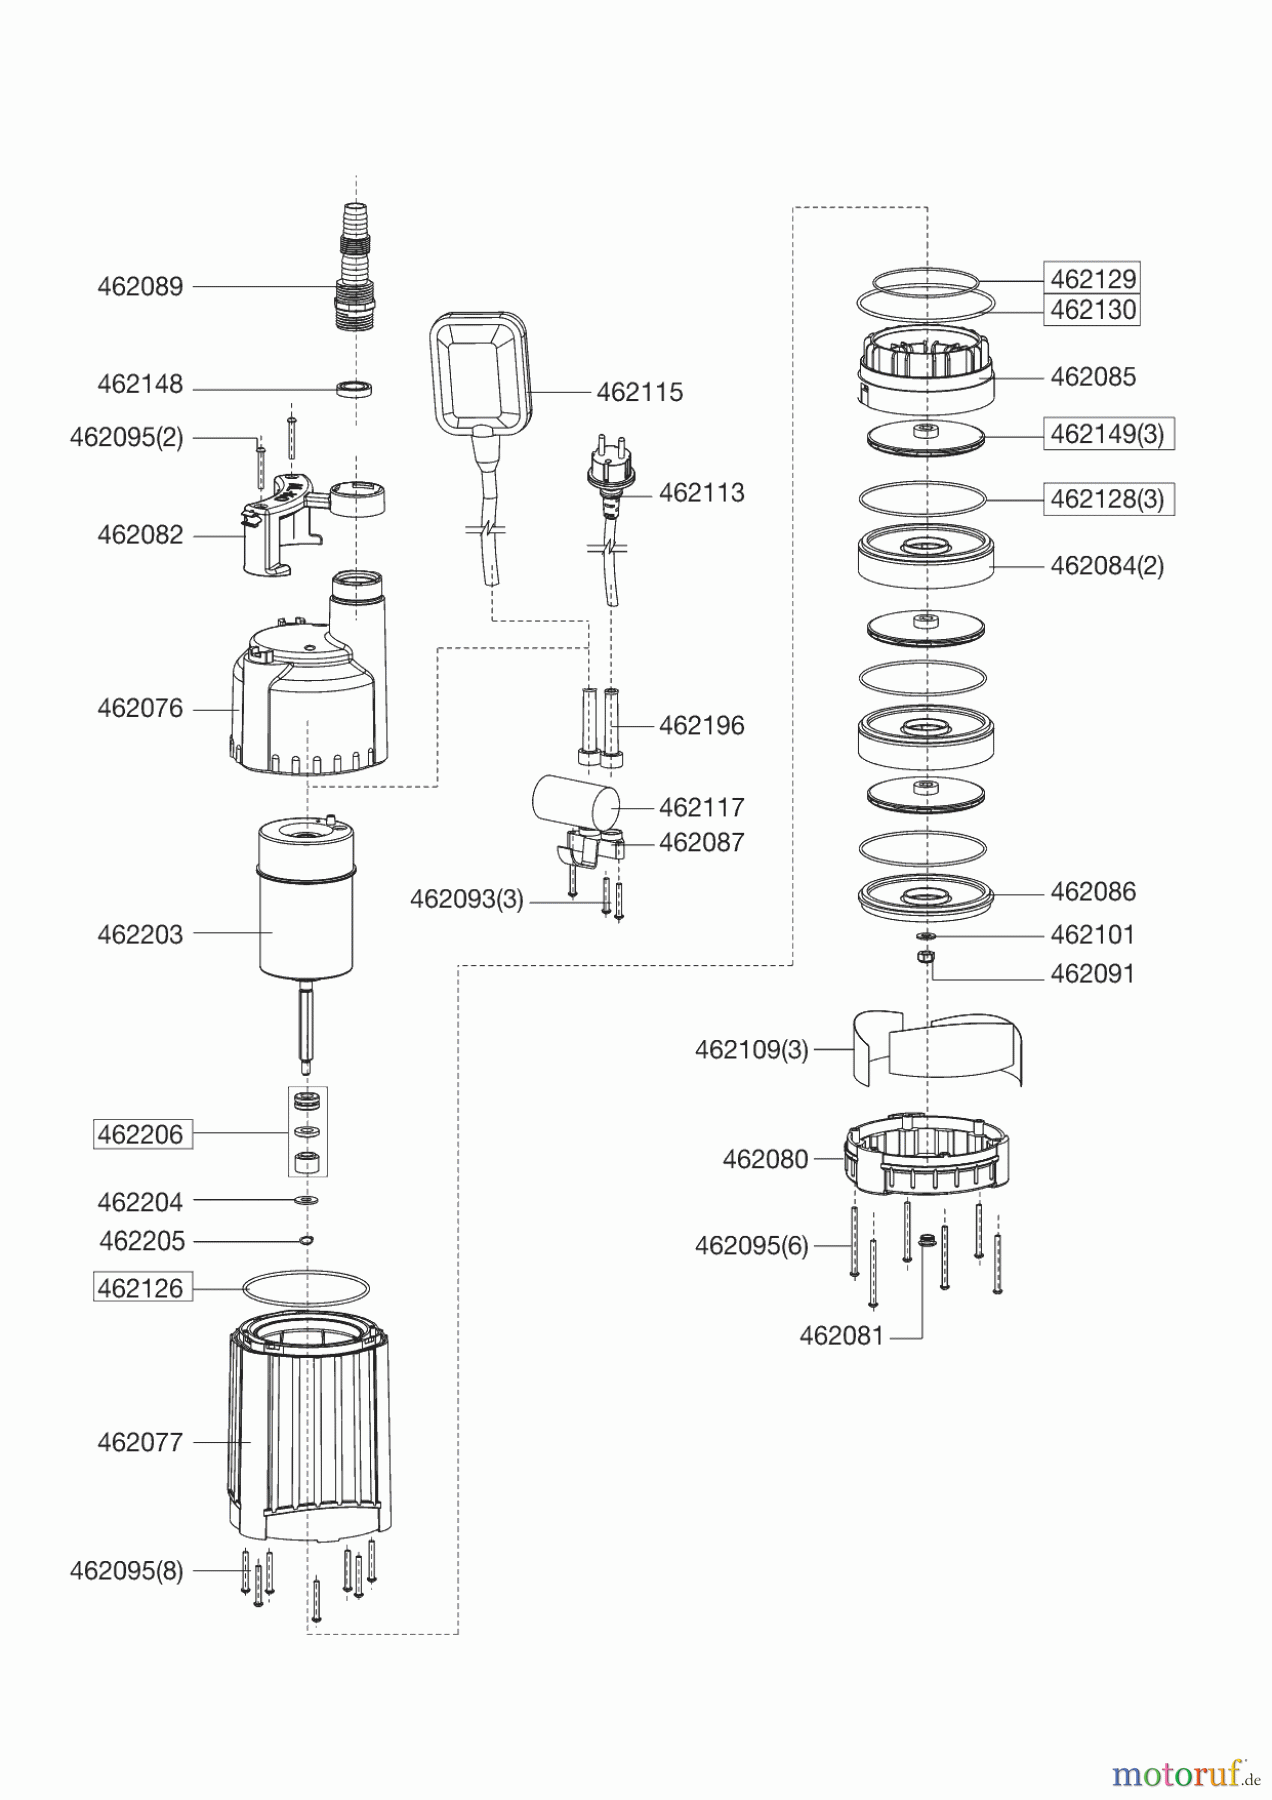  AL-KO Wassertechnik Tauchdruckpumpen TDS 1001/3  05/2012 Seite 1